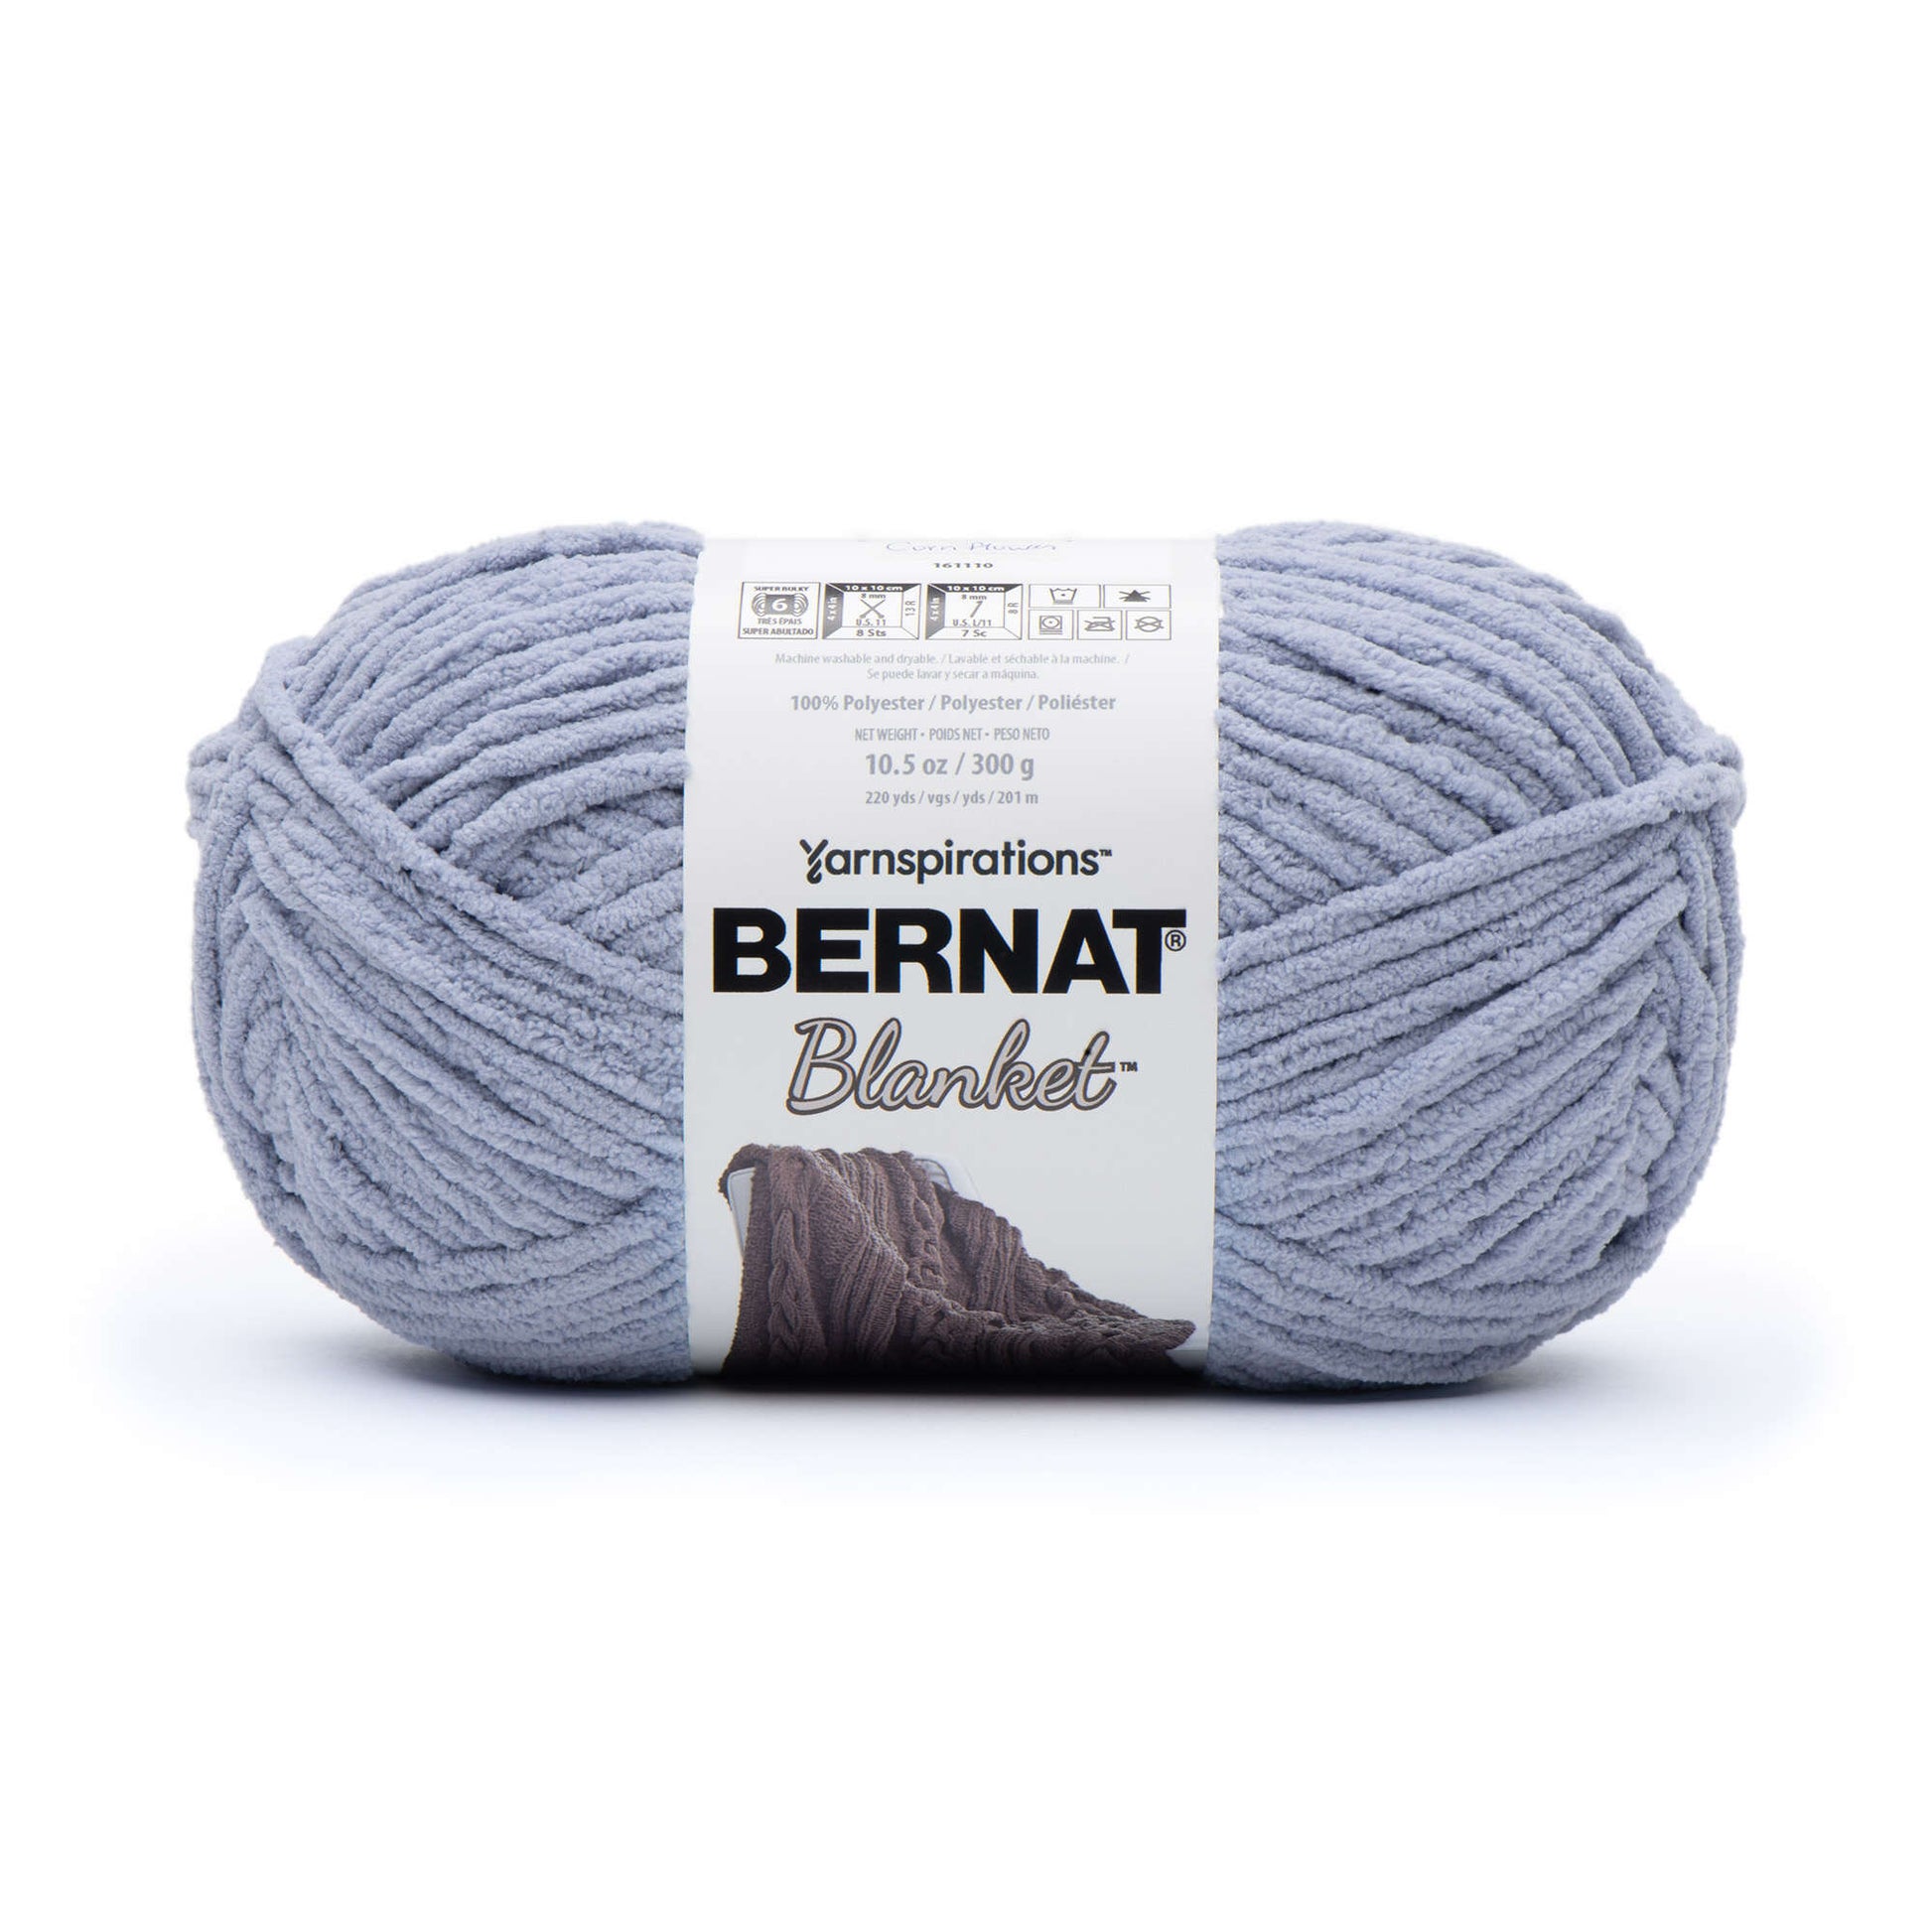 BERNAT BLANKET Yarn, Country Blue, 10.5oz/300g, 220 yards/201m, Super –  Yarn 2 Blanket